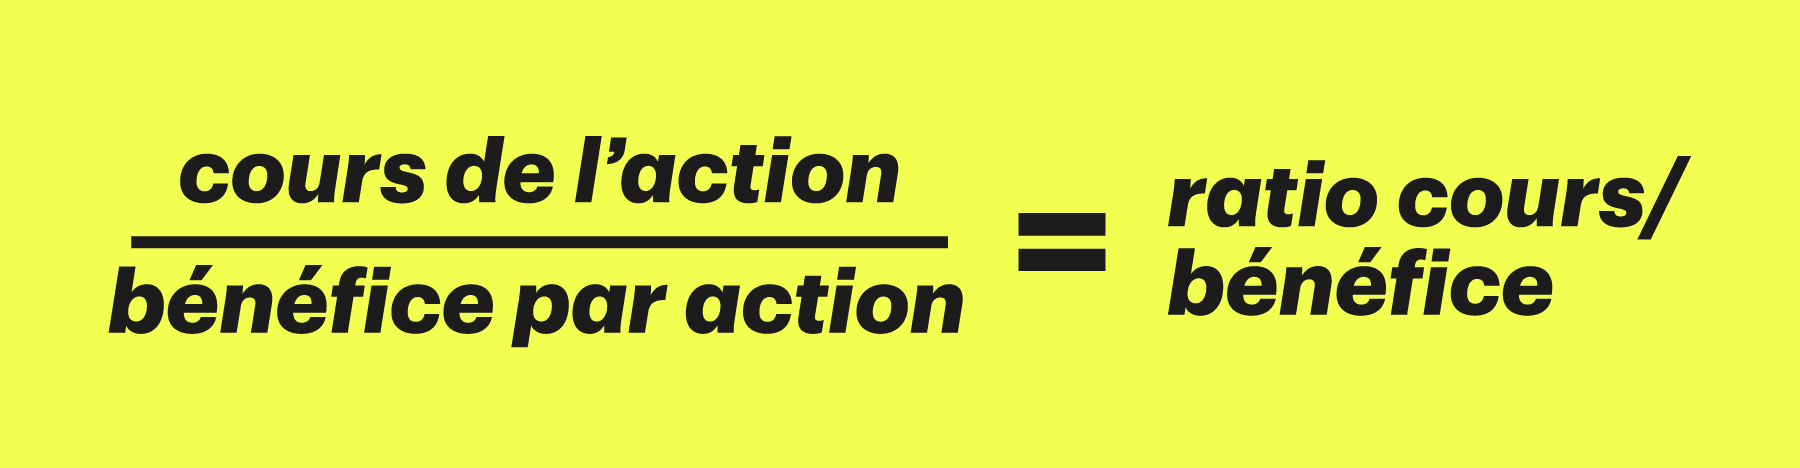 Cours de l’action ÷ Bénéfice par action = ratio cours/bénéfice